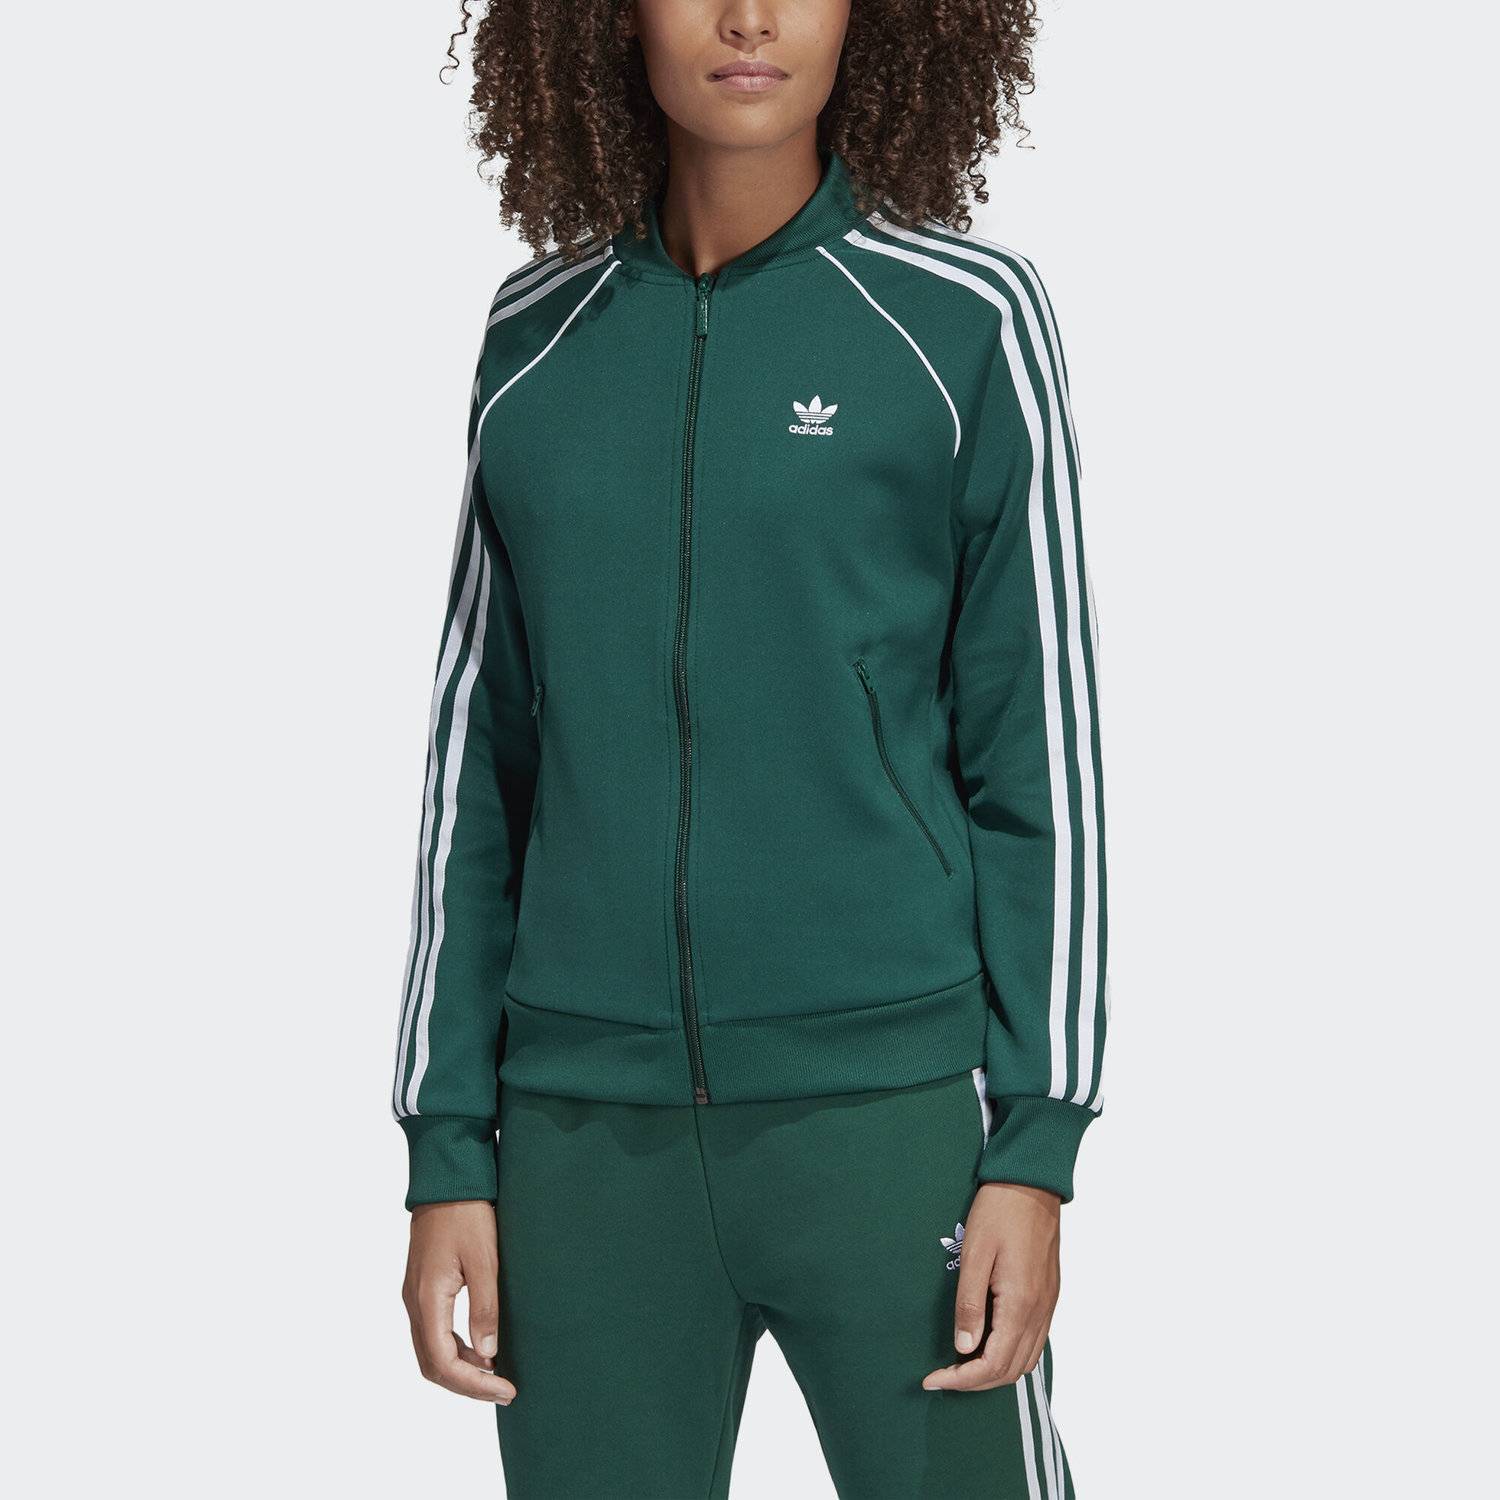 Адидас зеленый спортивный. Adidas Originals SST TT. Олимпийка адидас Originals зеленая. Олимпийка adidas Originals SST. Adidas SST Green.